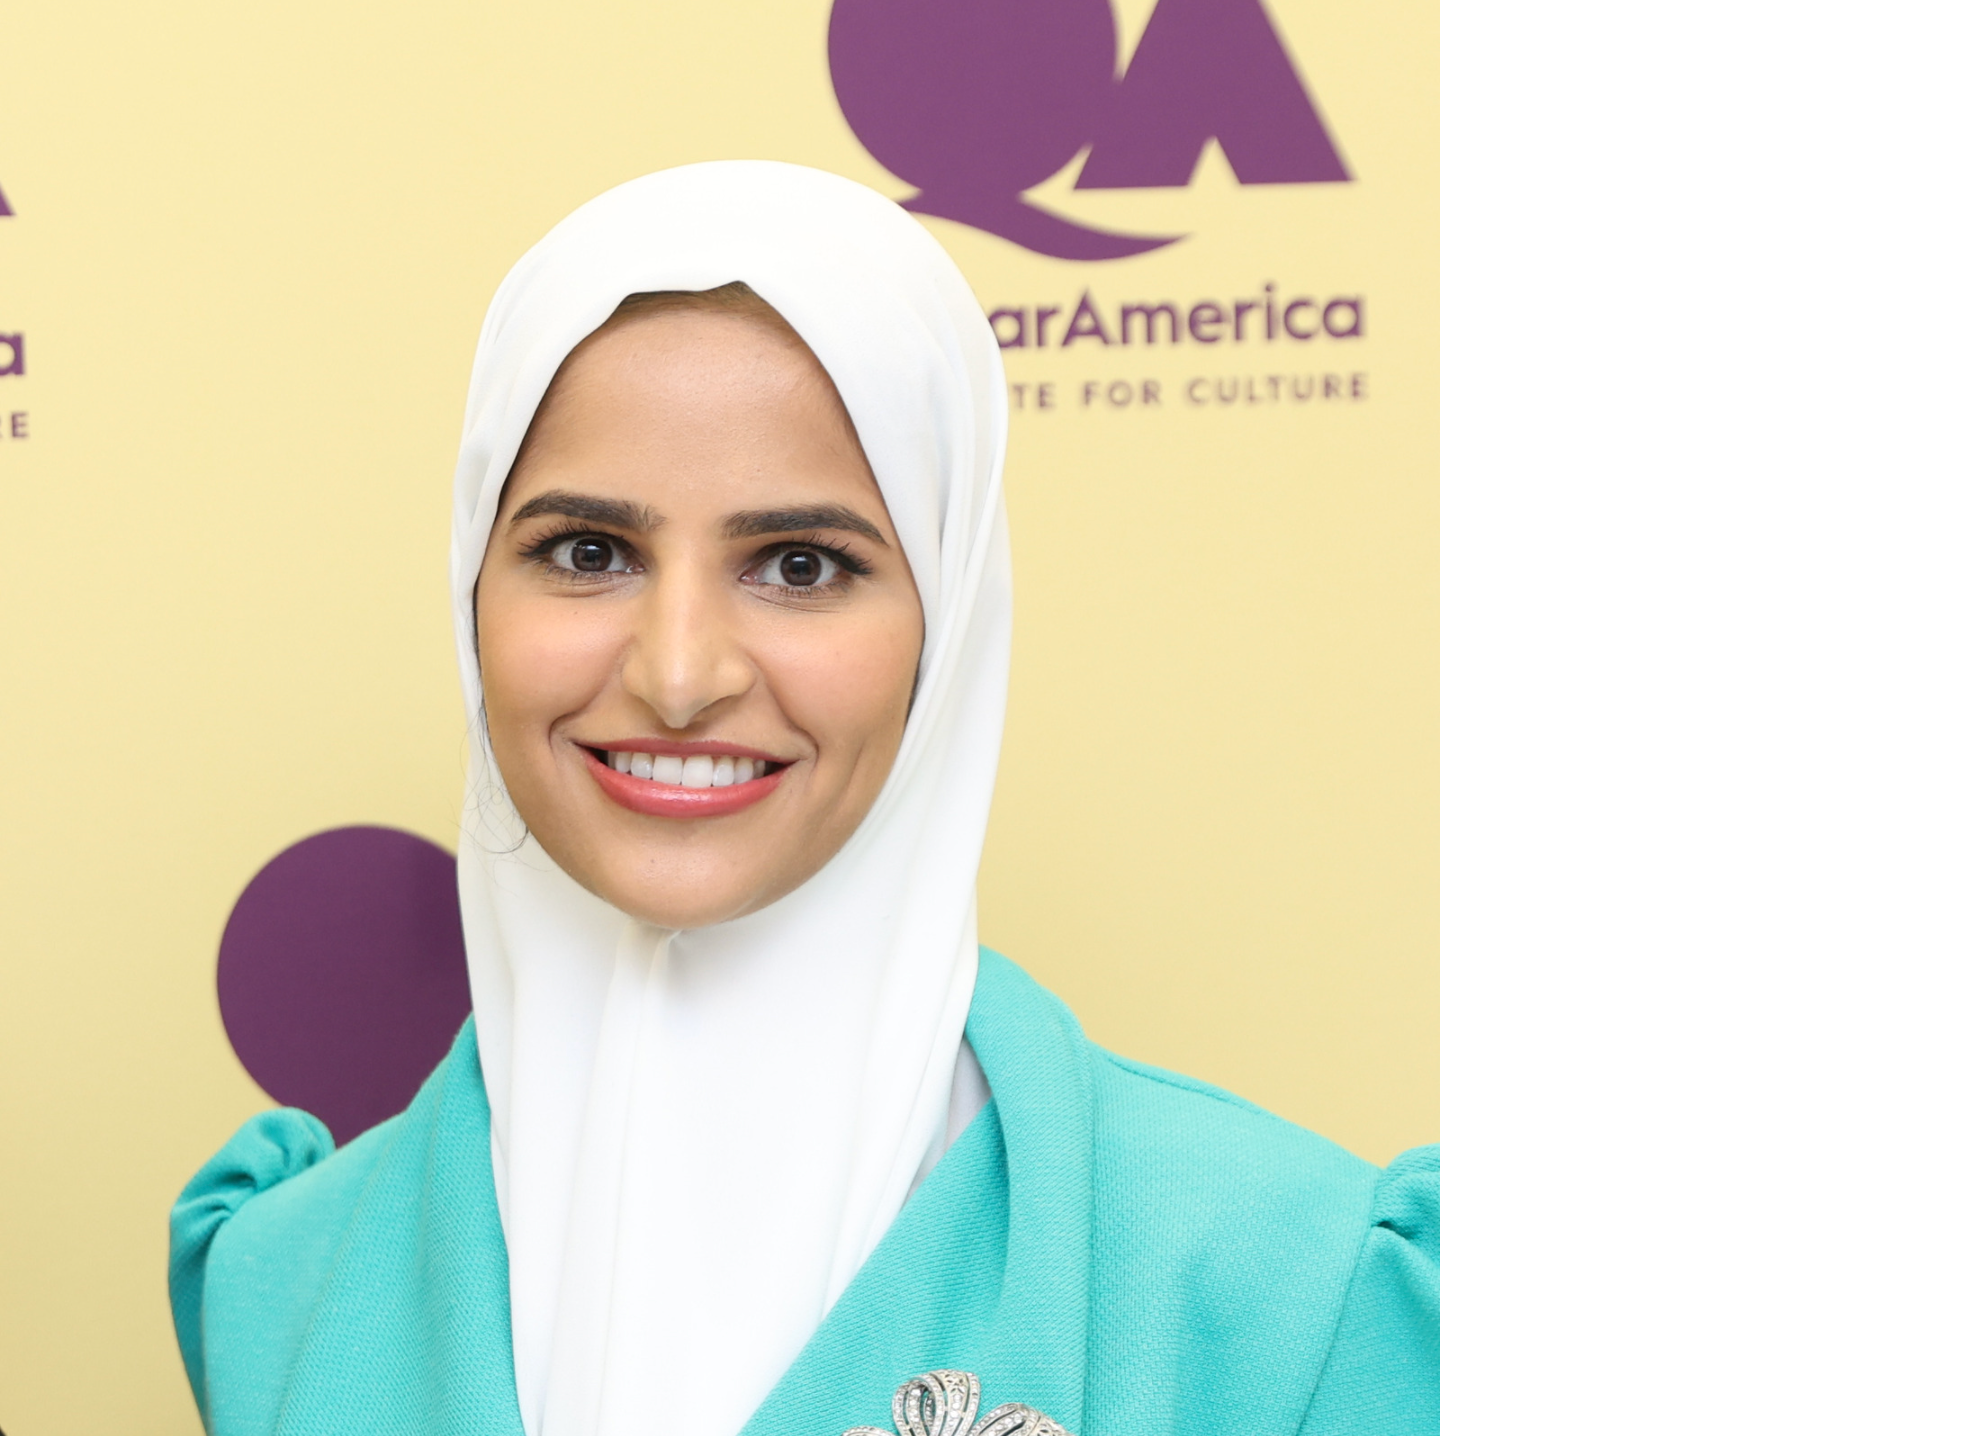 Washington, DC | BreakfastTable with Fatima Al-Dosari at the Qatar America Institute for Culture